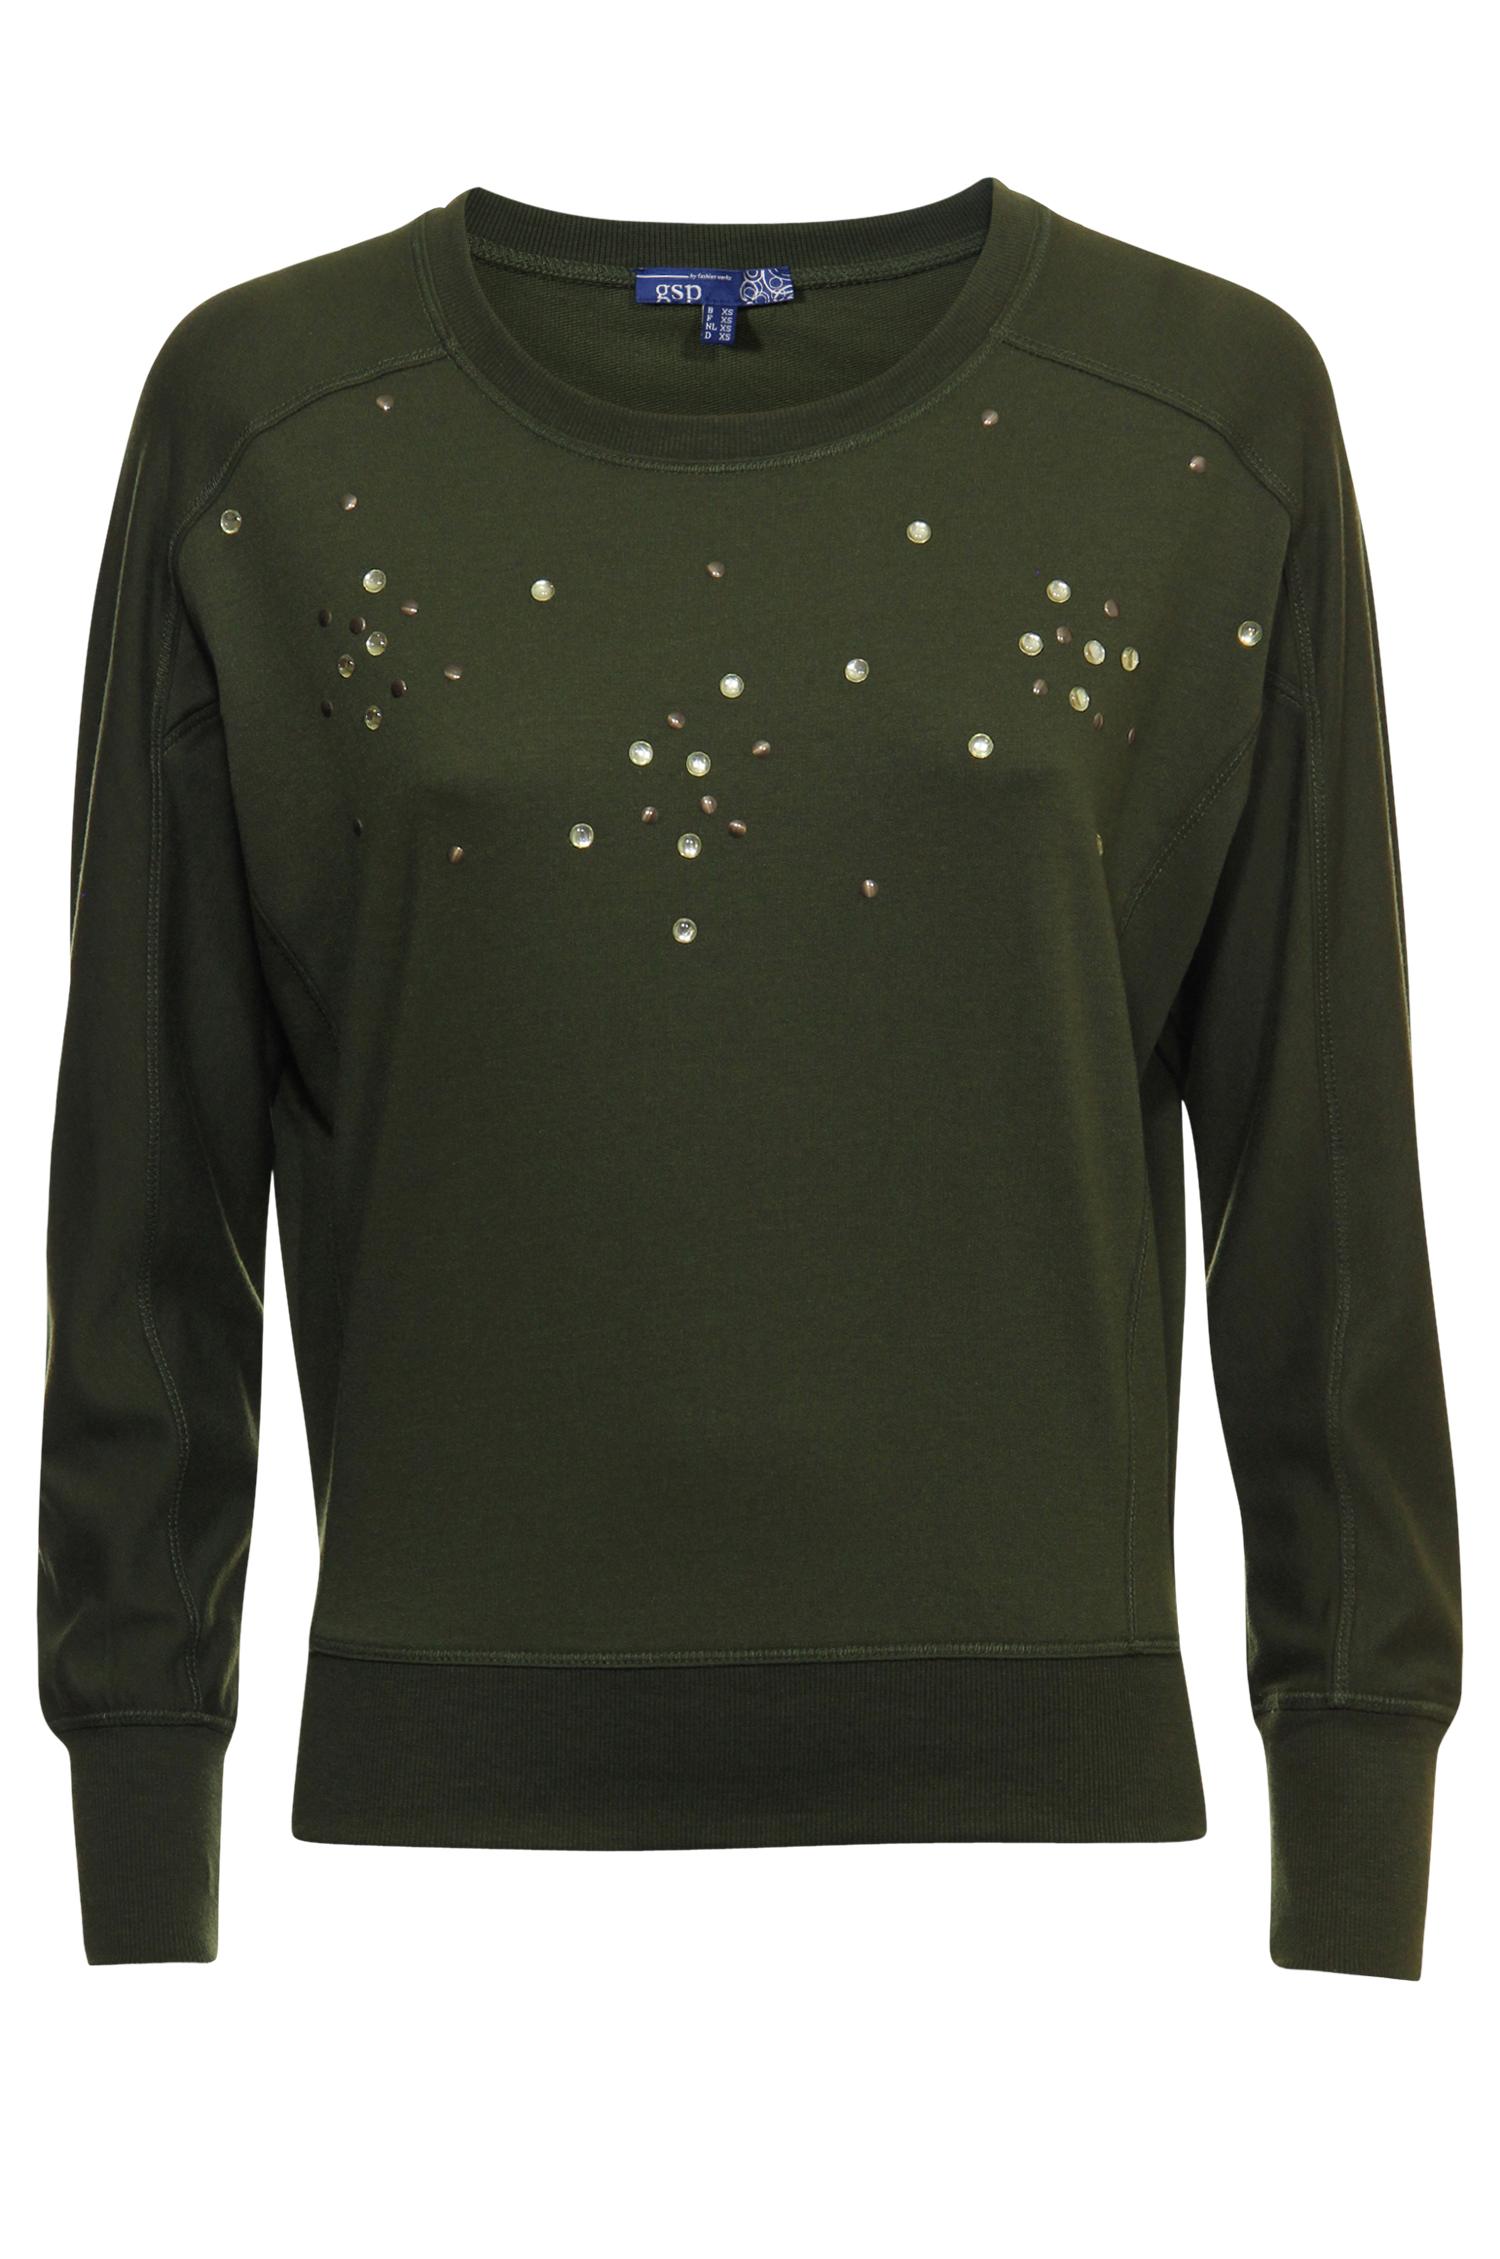 Olijfgroene sweater met diamantjes - E5 Mode - € 15,_,